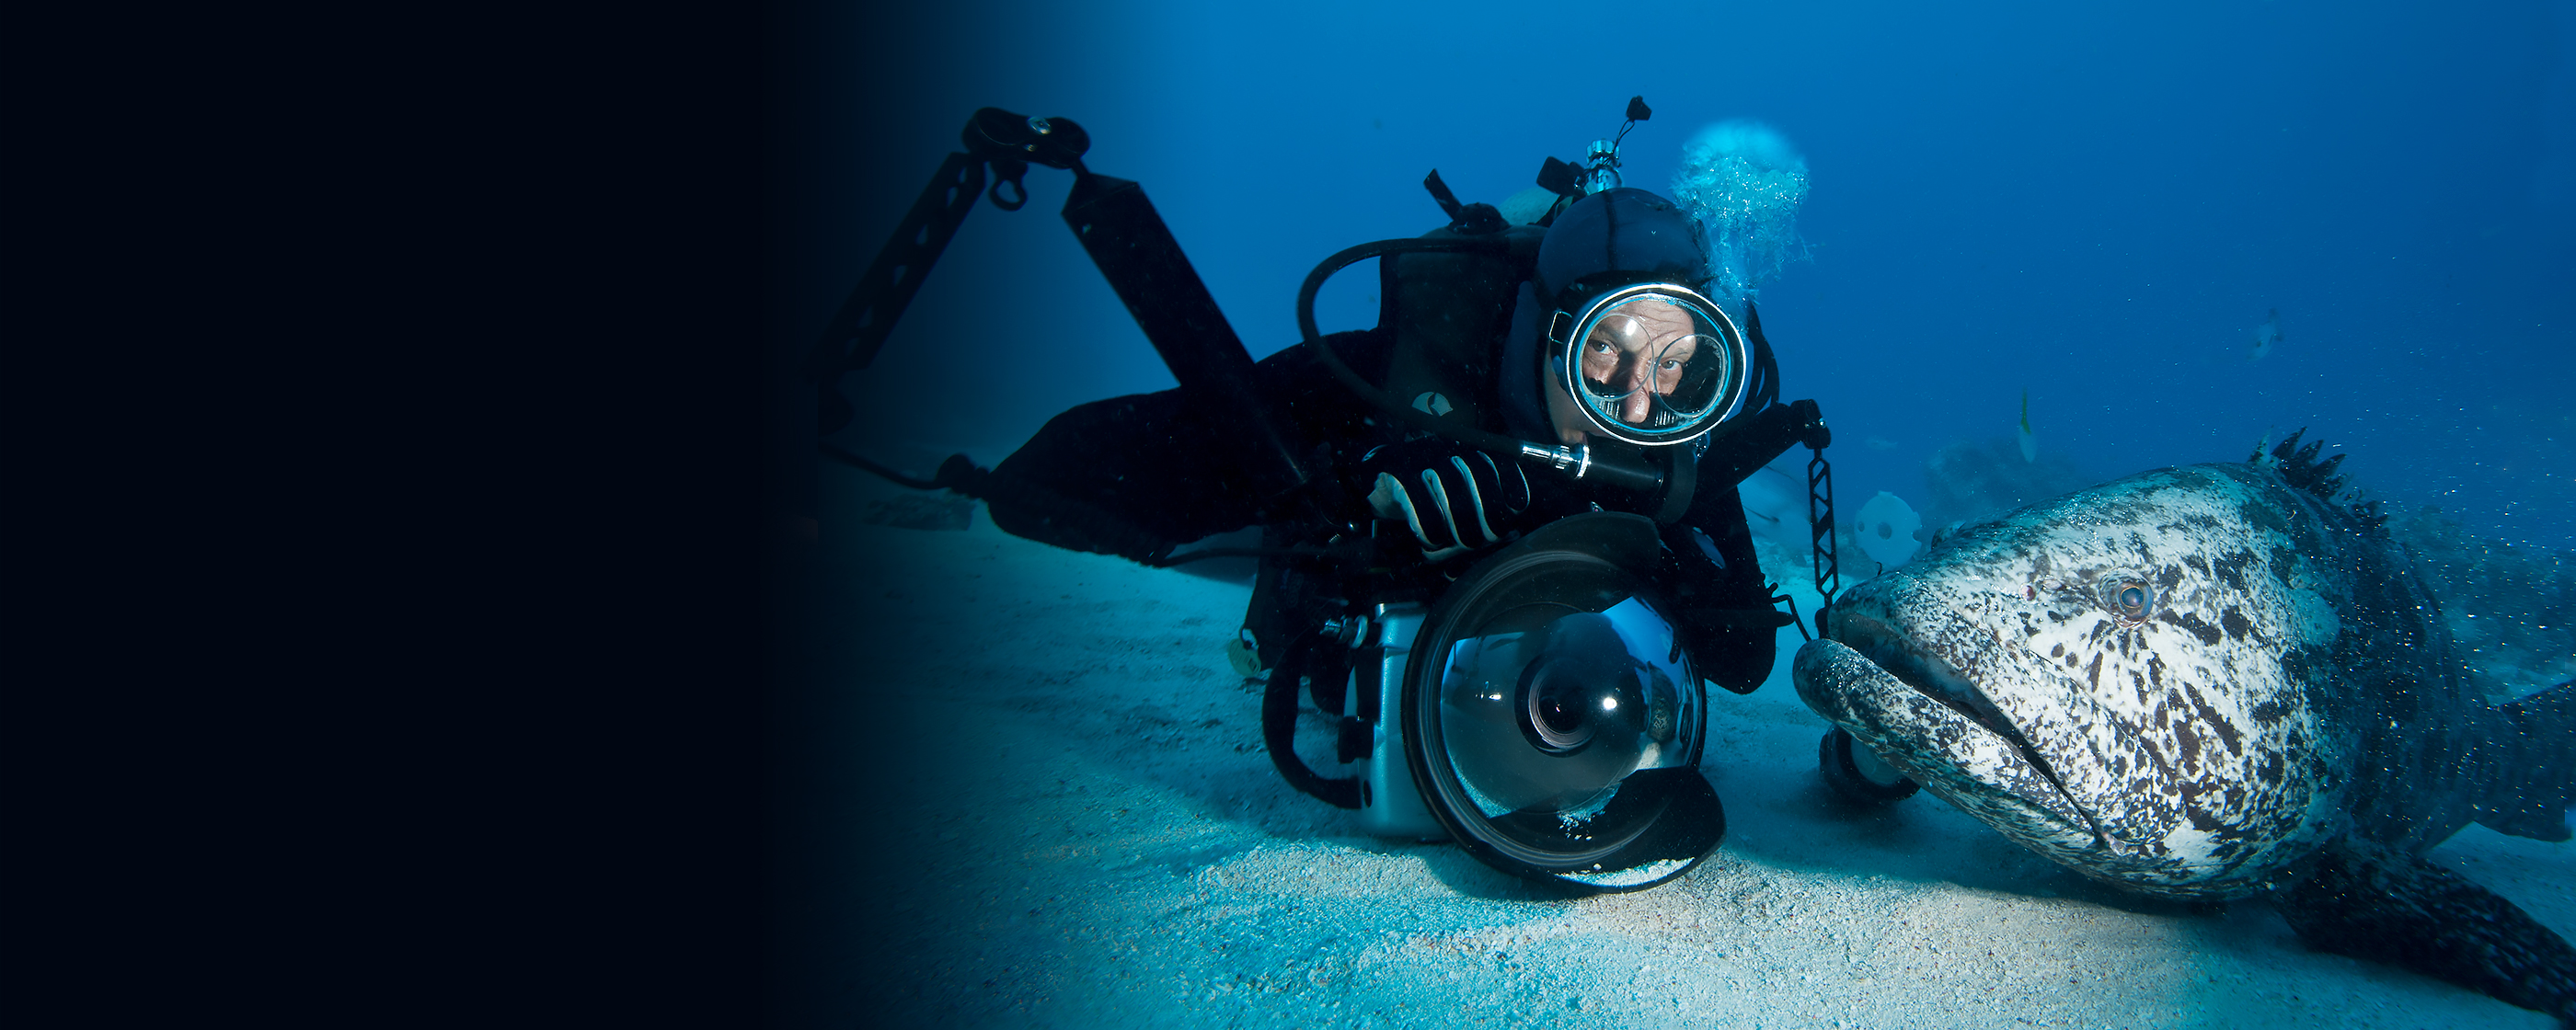 Звук морской глубины. Дэвид Дубиле фотограф. Дэвид Дубиле круг барракуд. Исследование морских глубин. Морской исследователь.